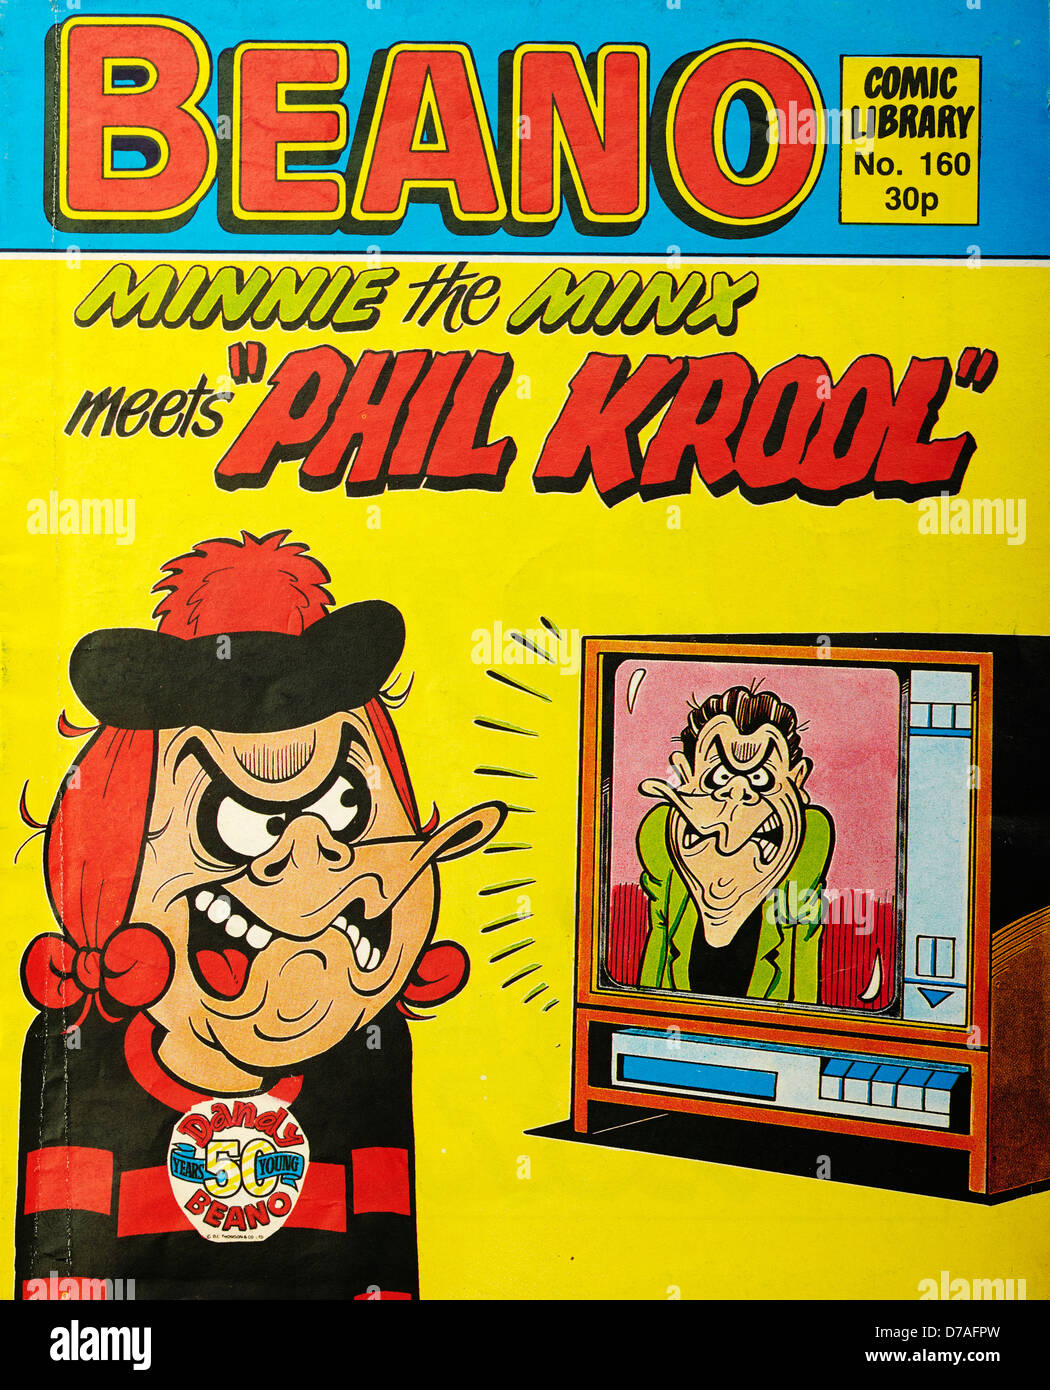 Il Beano rivista fumetto comico (Biblioteca) Foto Stock